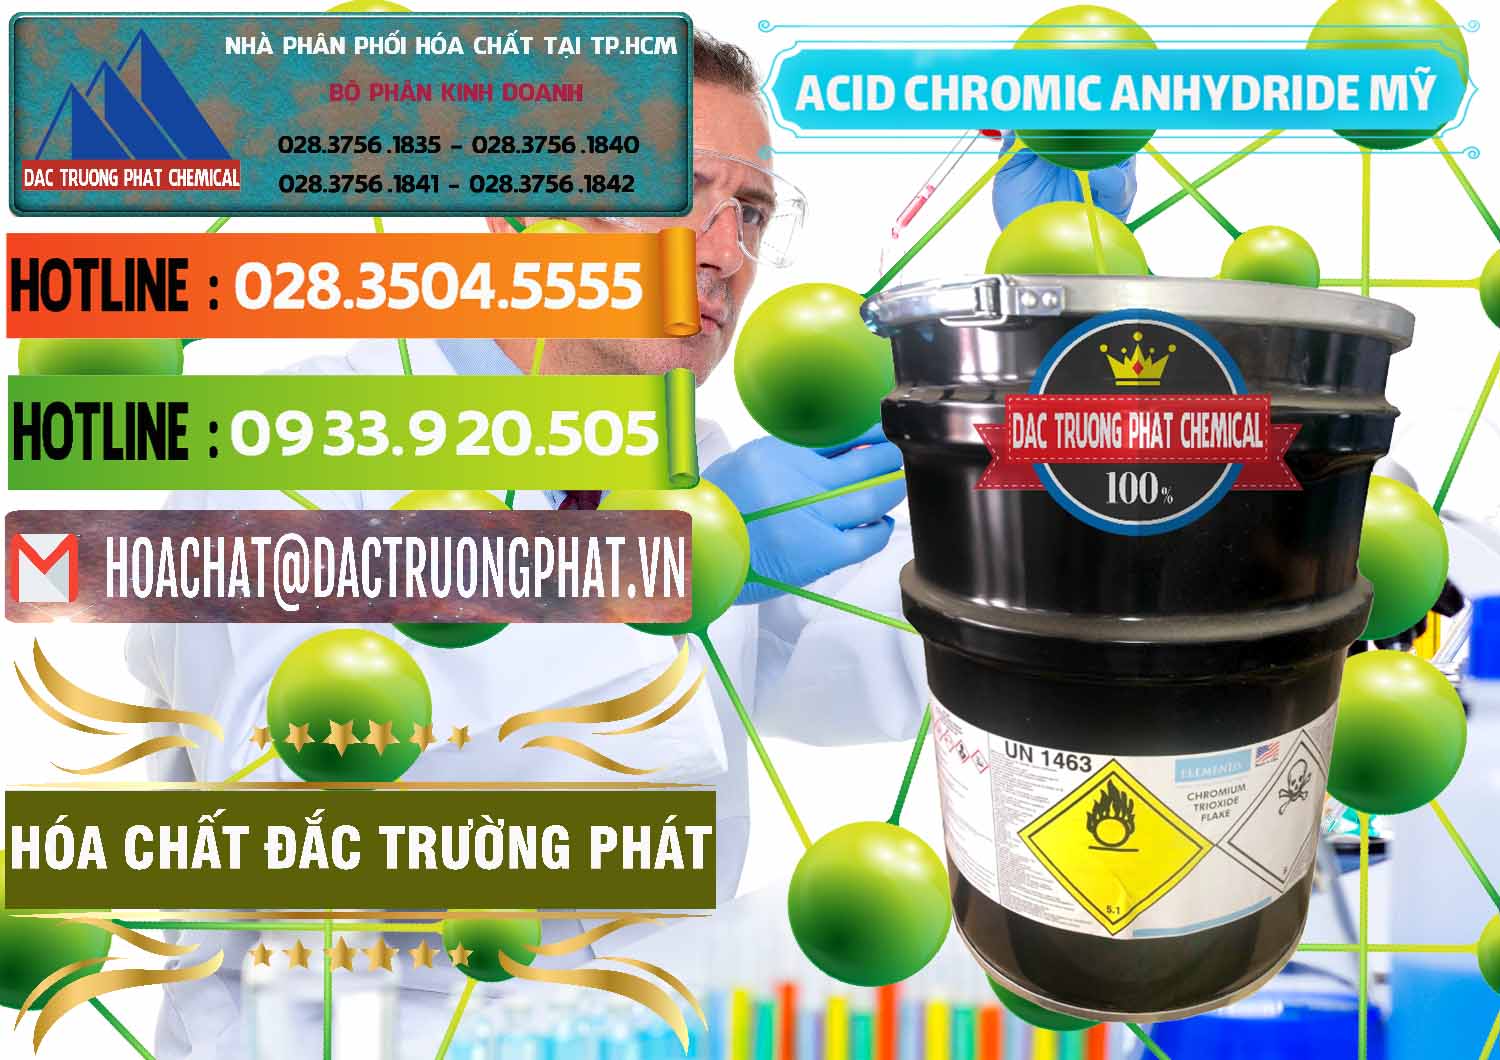 Đơn vị chuyên bán & phân phối Acid Chromic Anhydride - Cromic CRO3 USA Mỹ - 0364 - Đơn vị chuyên cung cấp & nhập khẩu hóa chất tại TP.HCM - cungcaphoachat.com.vn